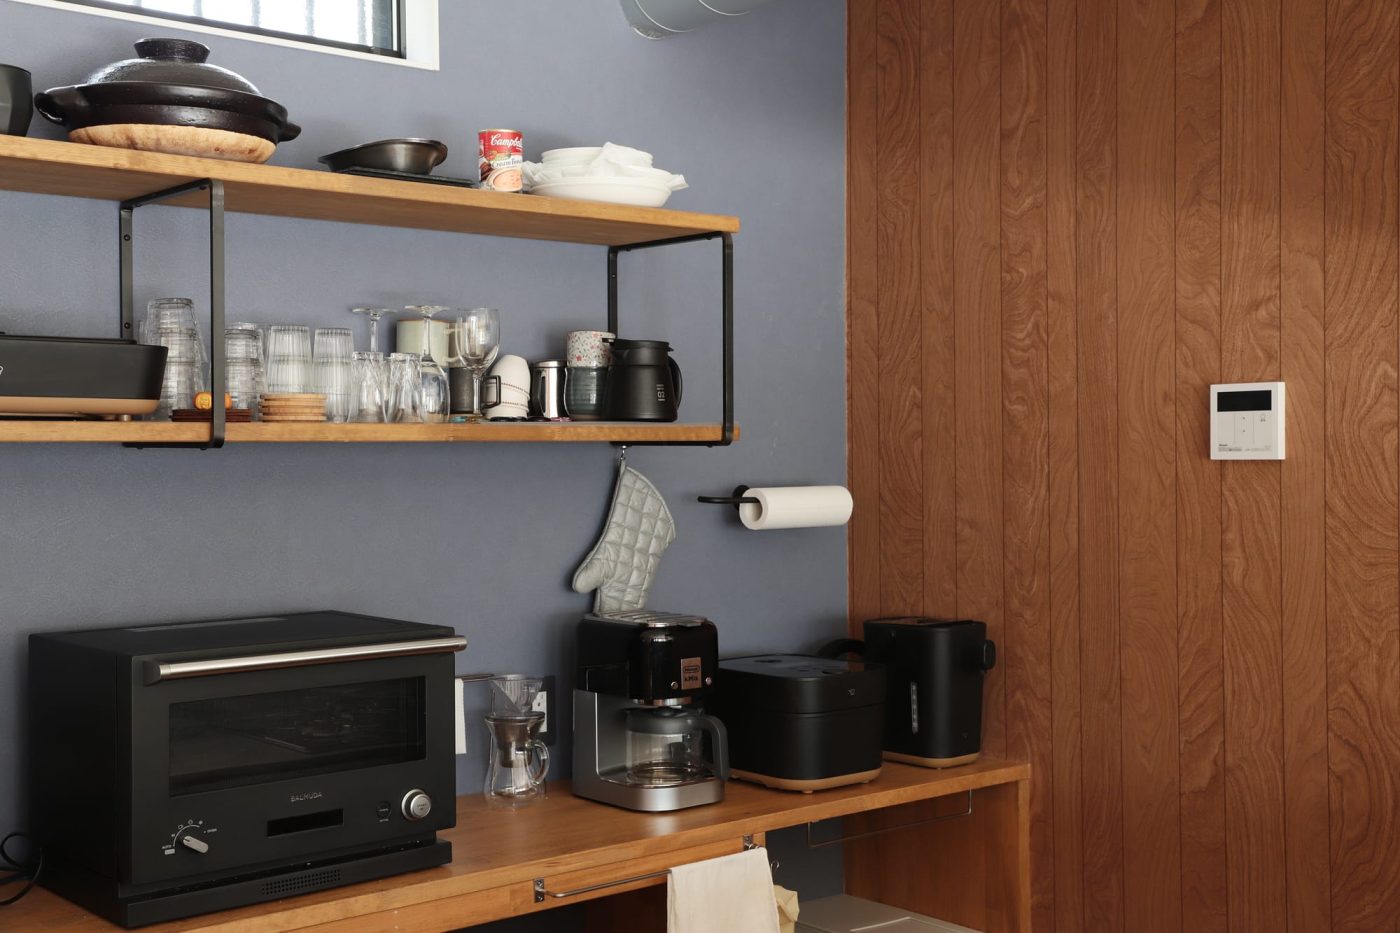 ブラックで揃えたキッチン家電が、鉄製の棚受けやペーパーホルダーに馴染みます。